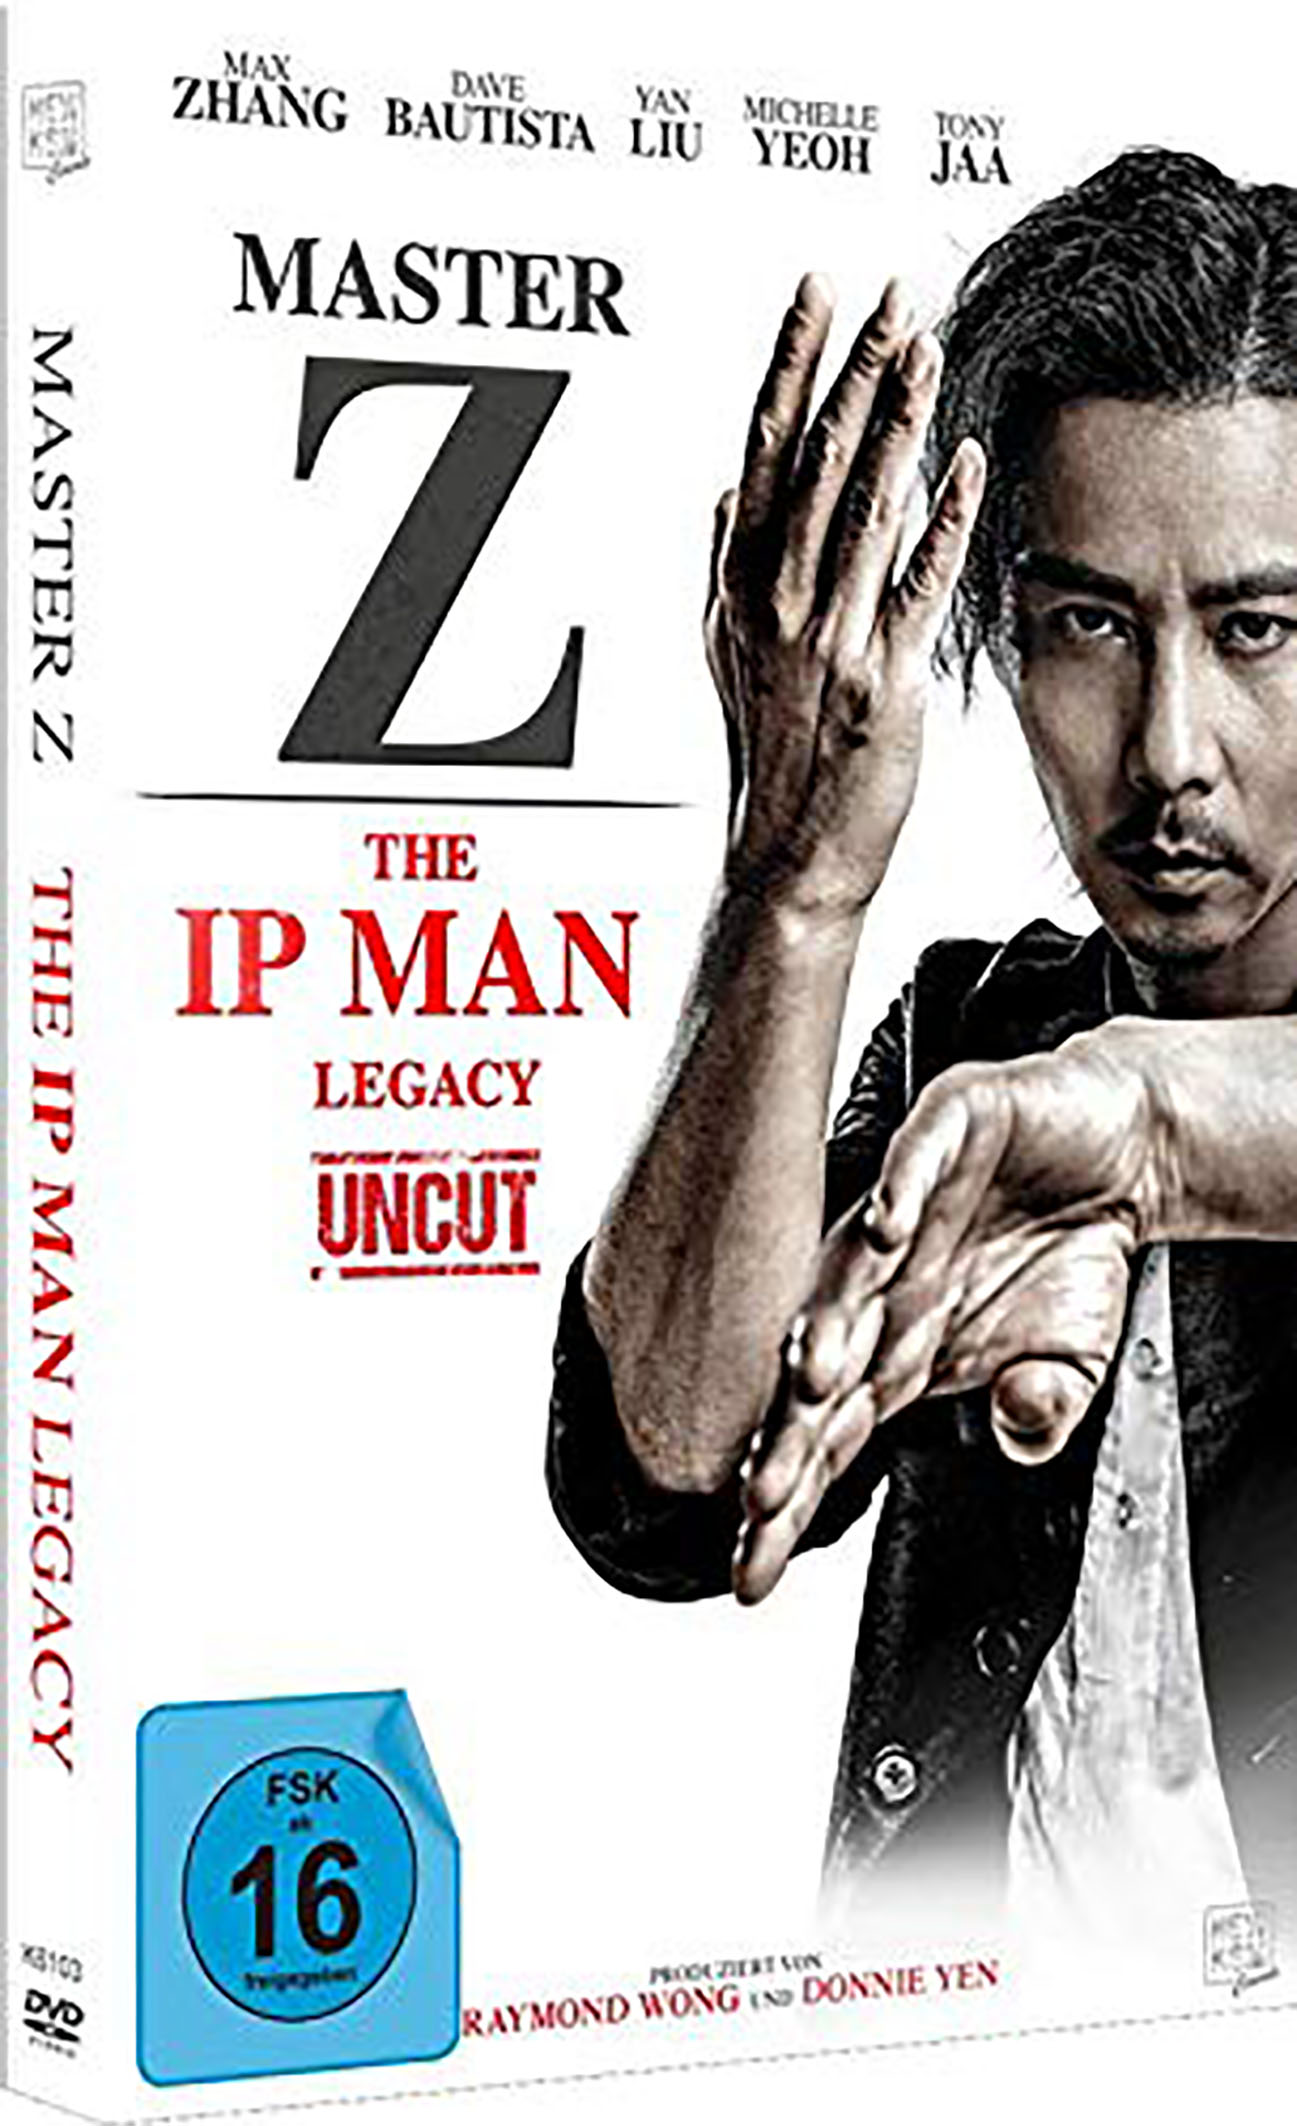 Master Z - The Ip Man Legacy (DVD) Image 2